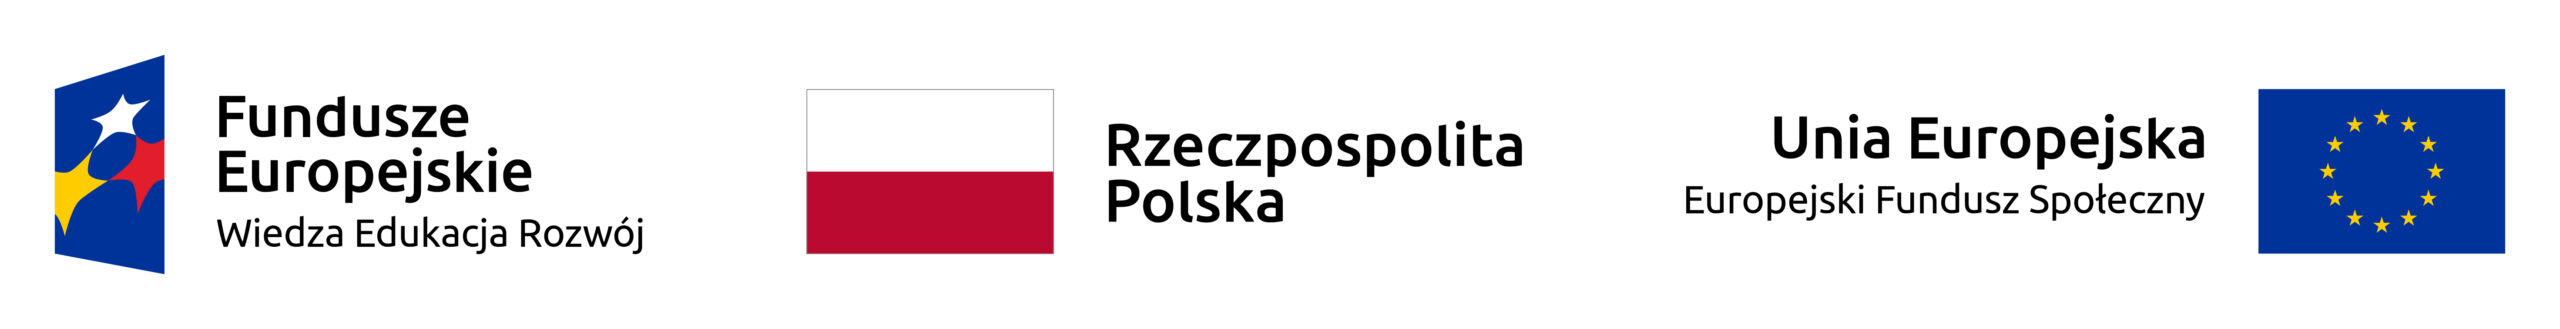 Logotypy informujące o finansowaniu projektu z Unii Europejskiej i Polski